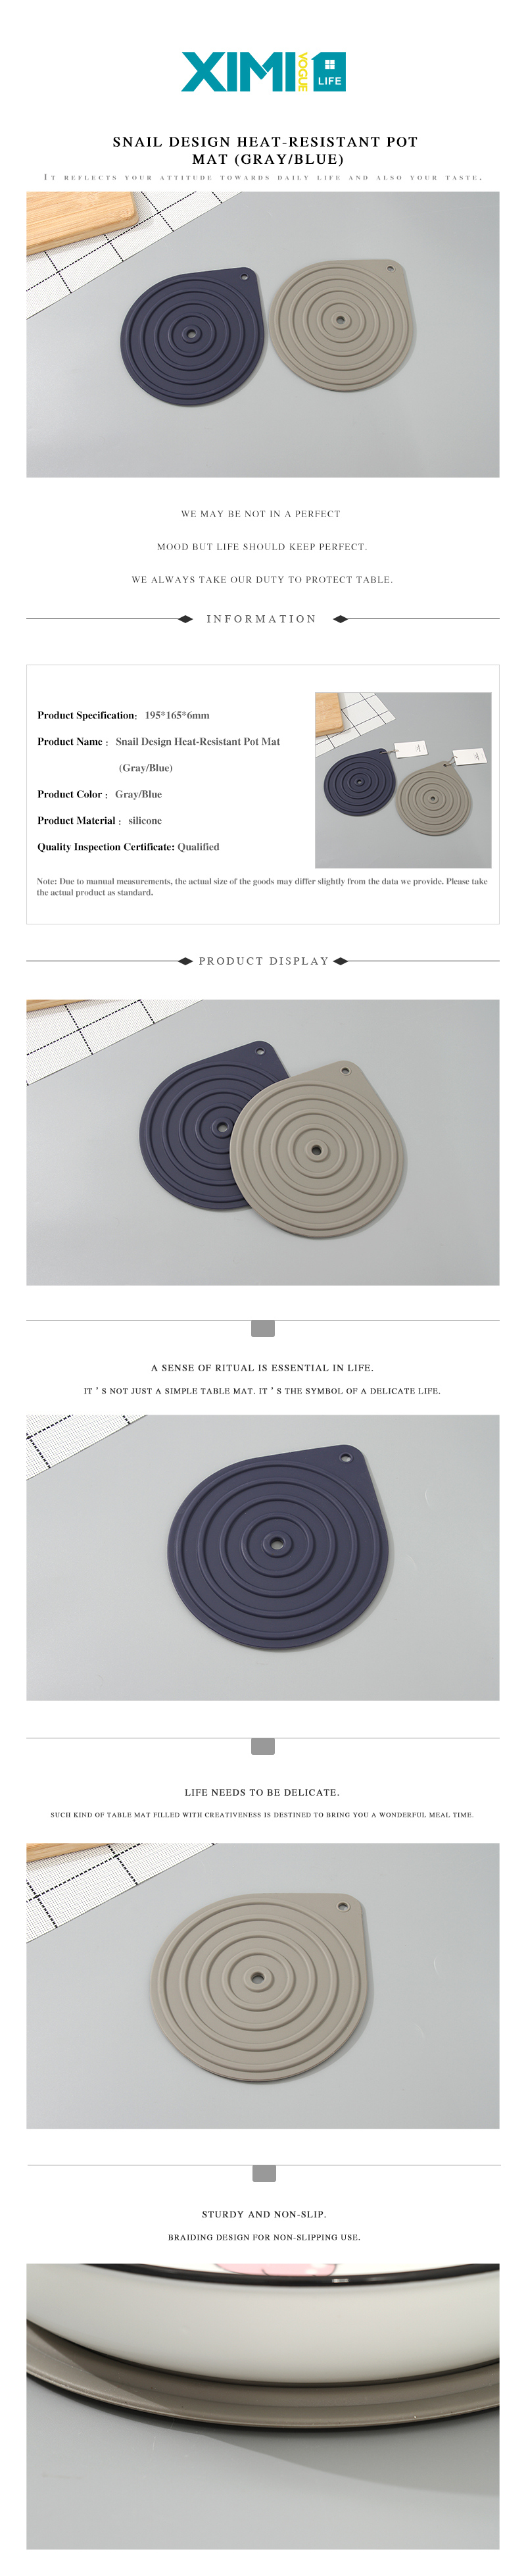 Snail Design Heat-Resistant Pot Mat (Gray/Blue) /></p>
<p>Quality Guaranteed</p>
					</div>
				</div>
			</div>
					<div class=